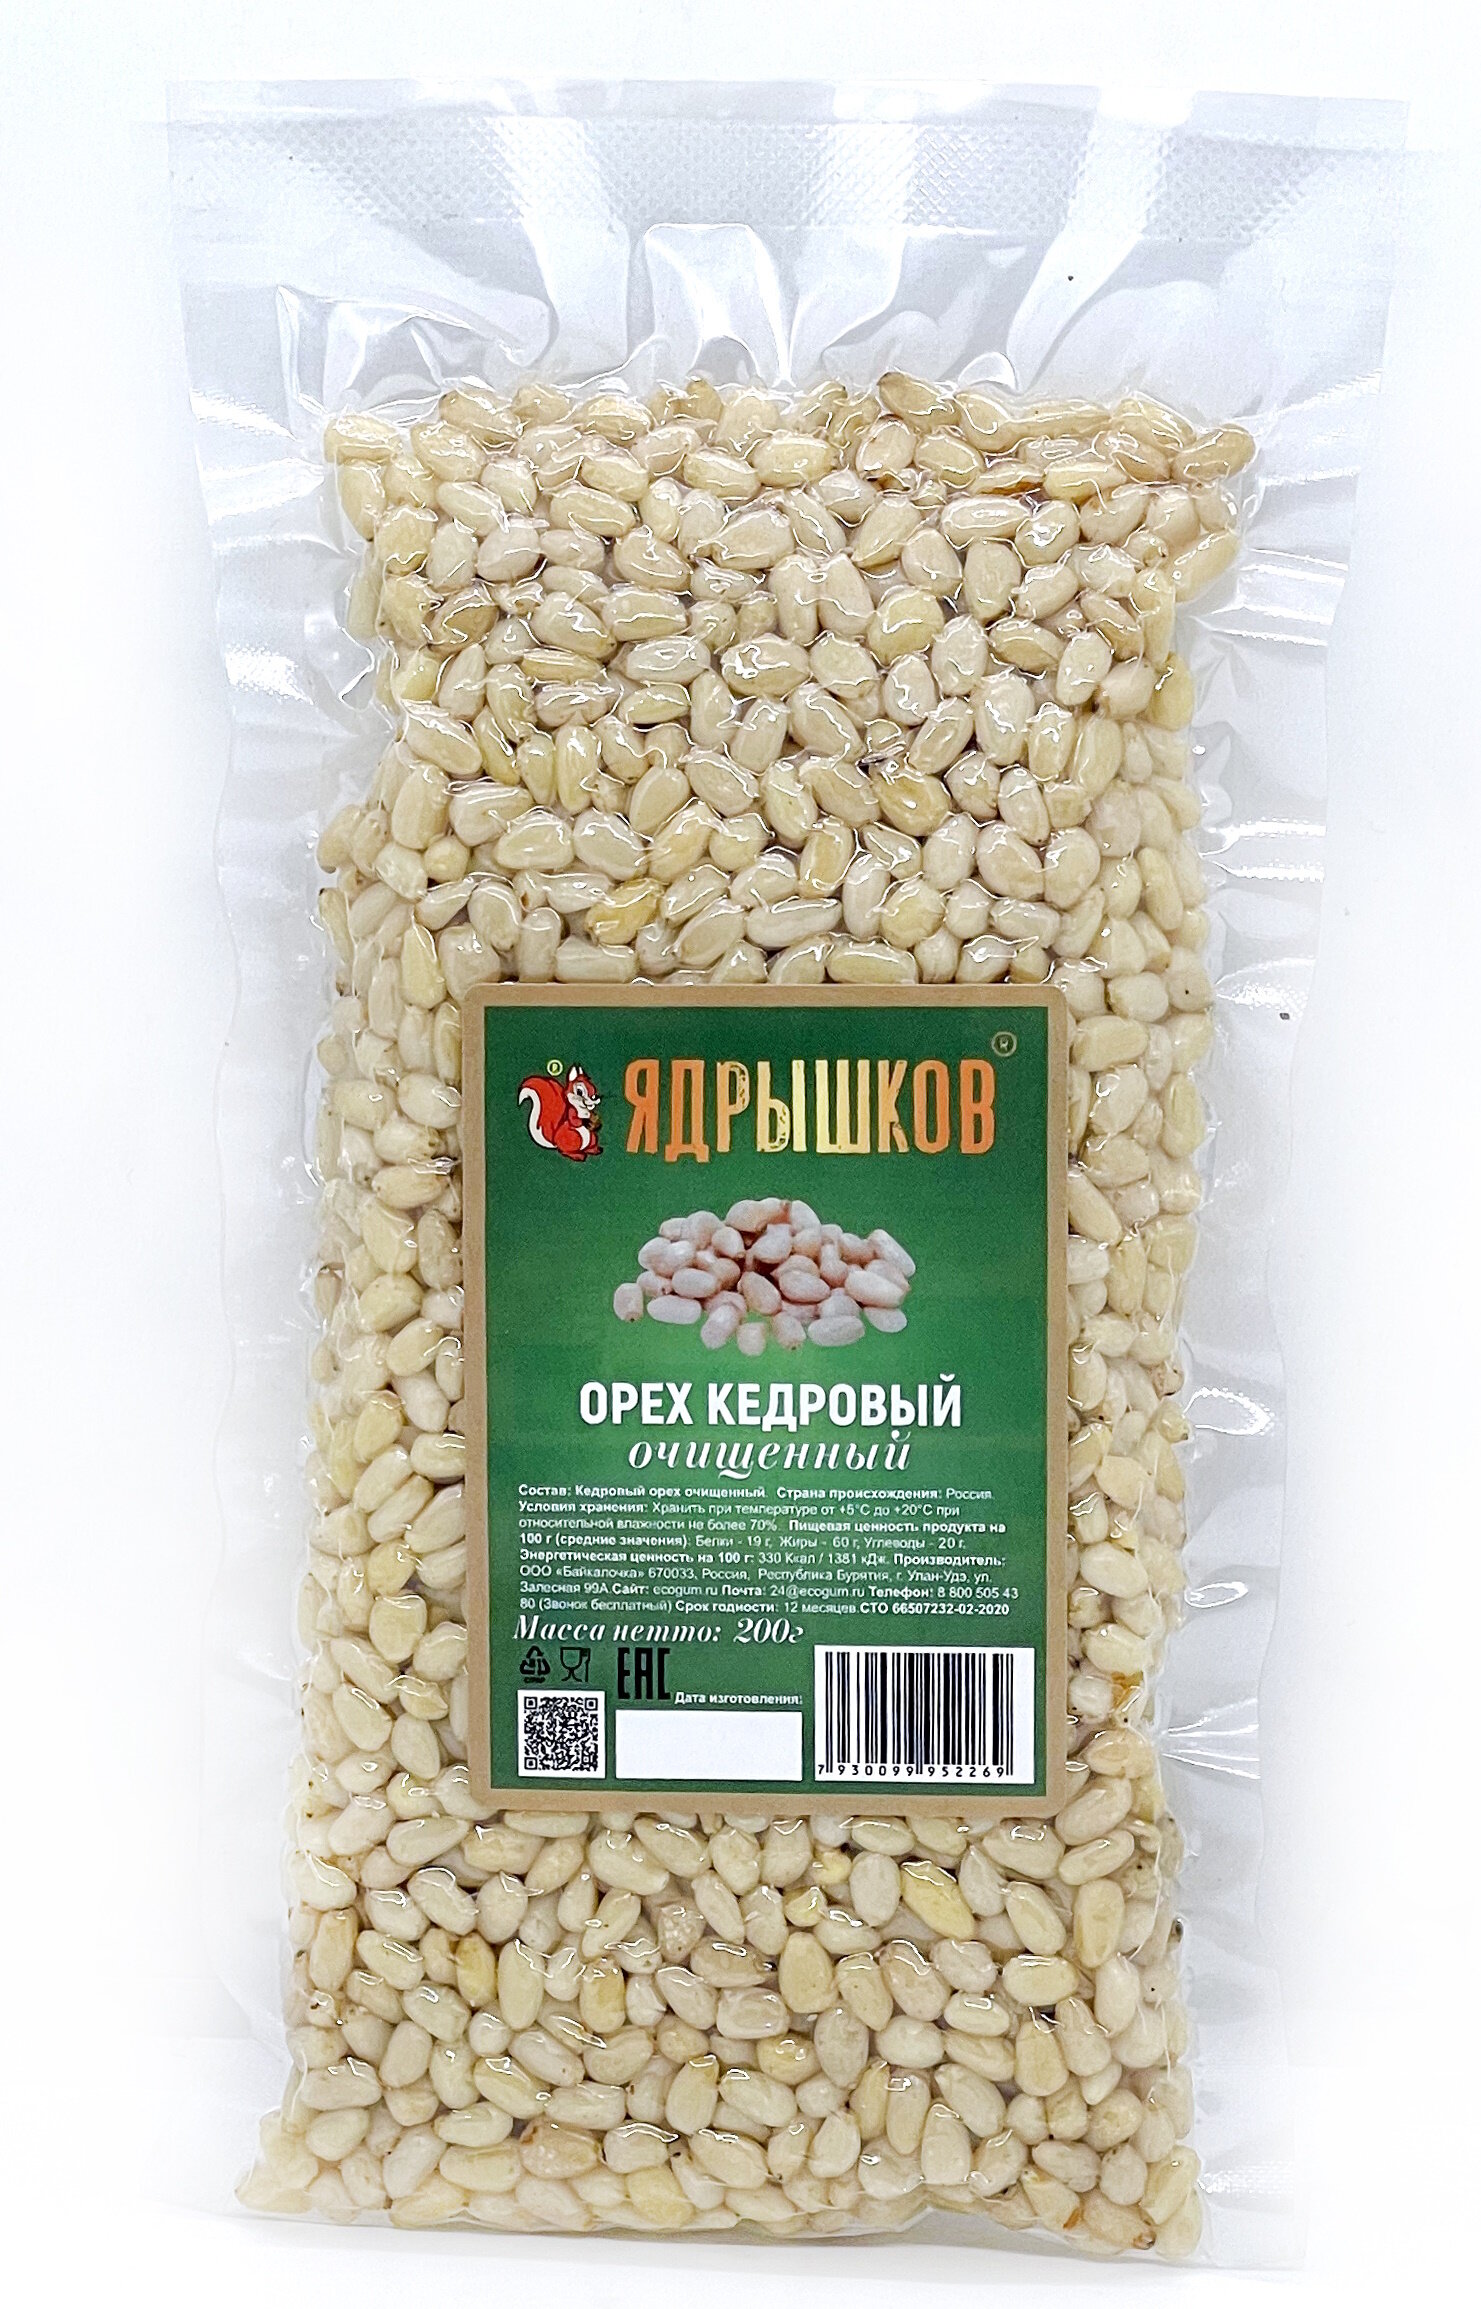 Кедровый орех очищенный "Ядрышков" 200 гр. 10 шт. - фотография № 2